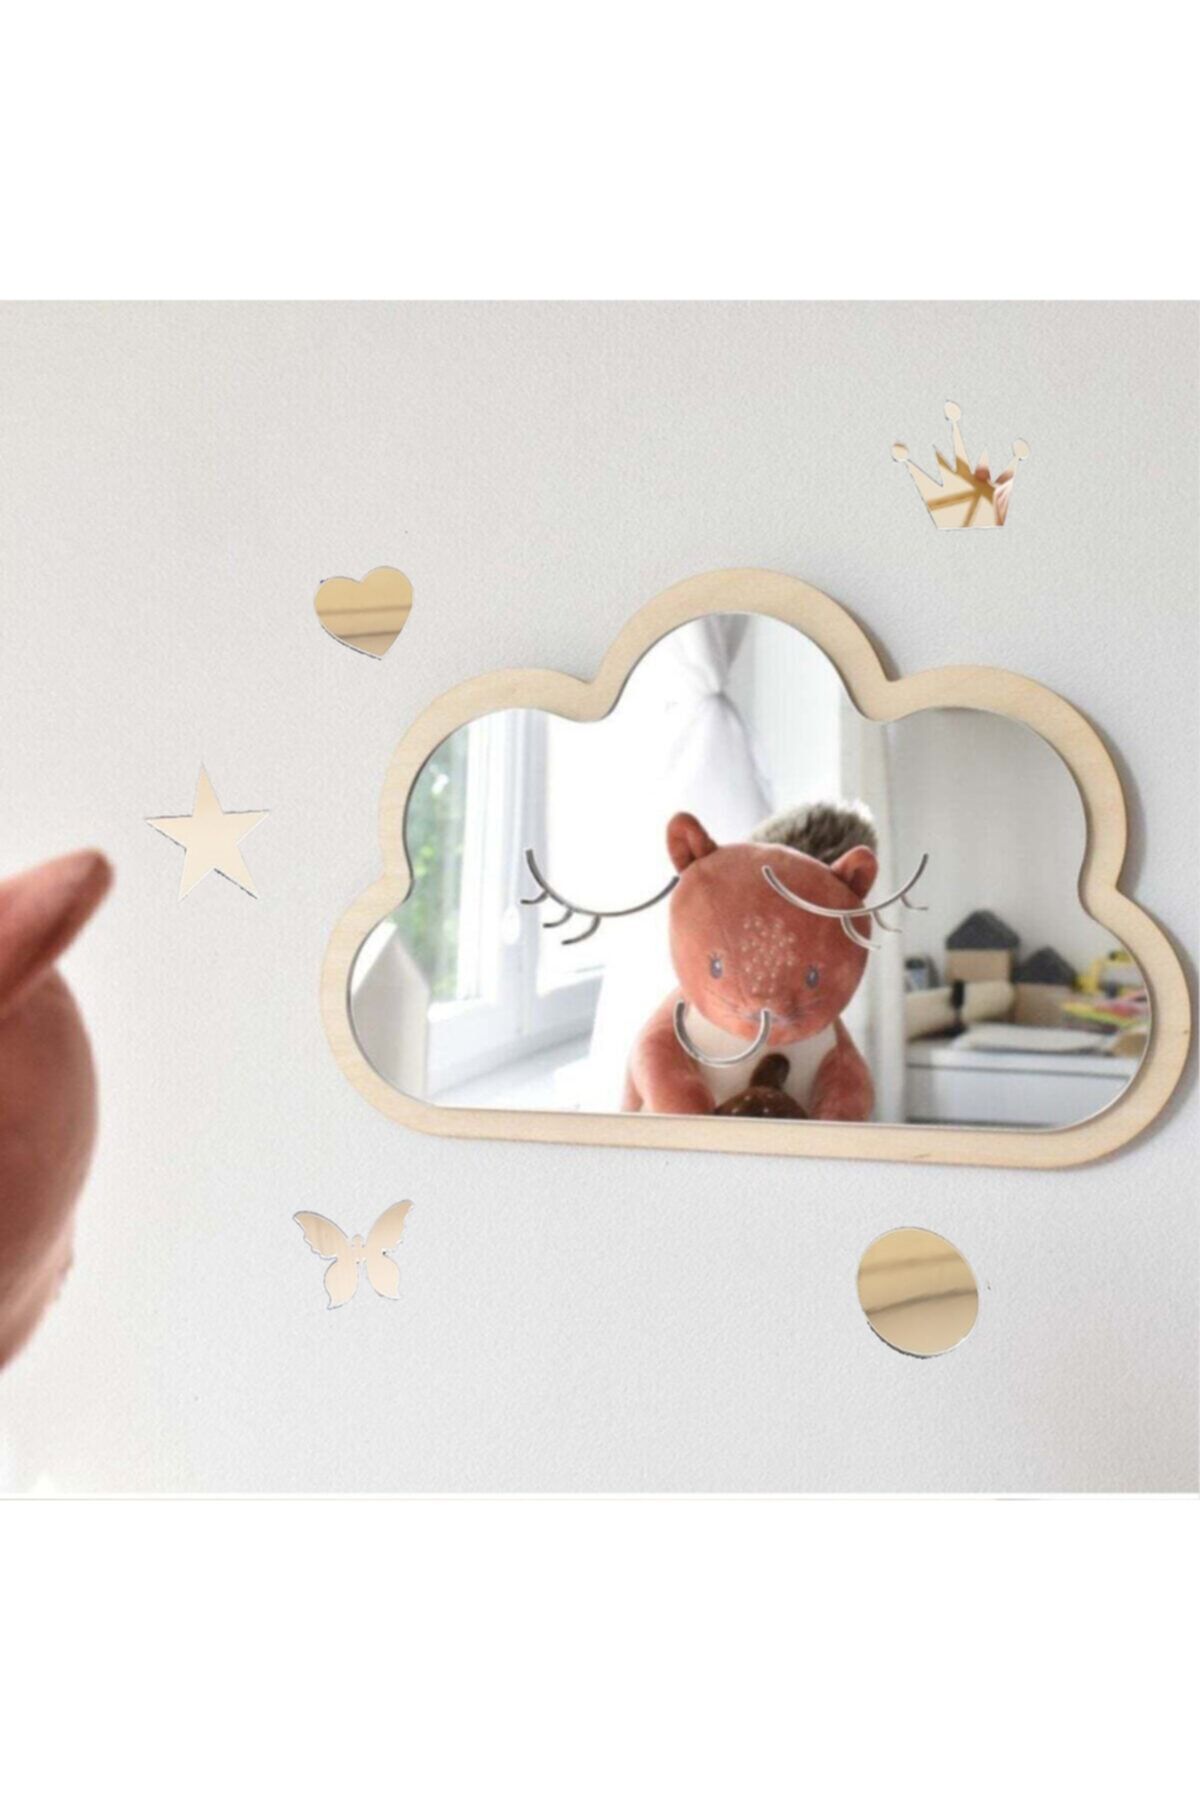 GİZEM SHOP Sevimli Gülen Yüz Bulut Ayna Dekoratif Çocuk Odası Kesmeyen Ayna